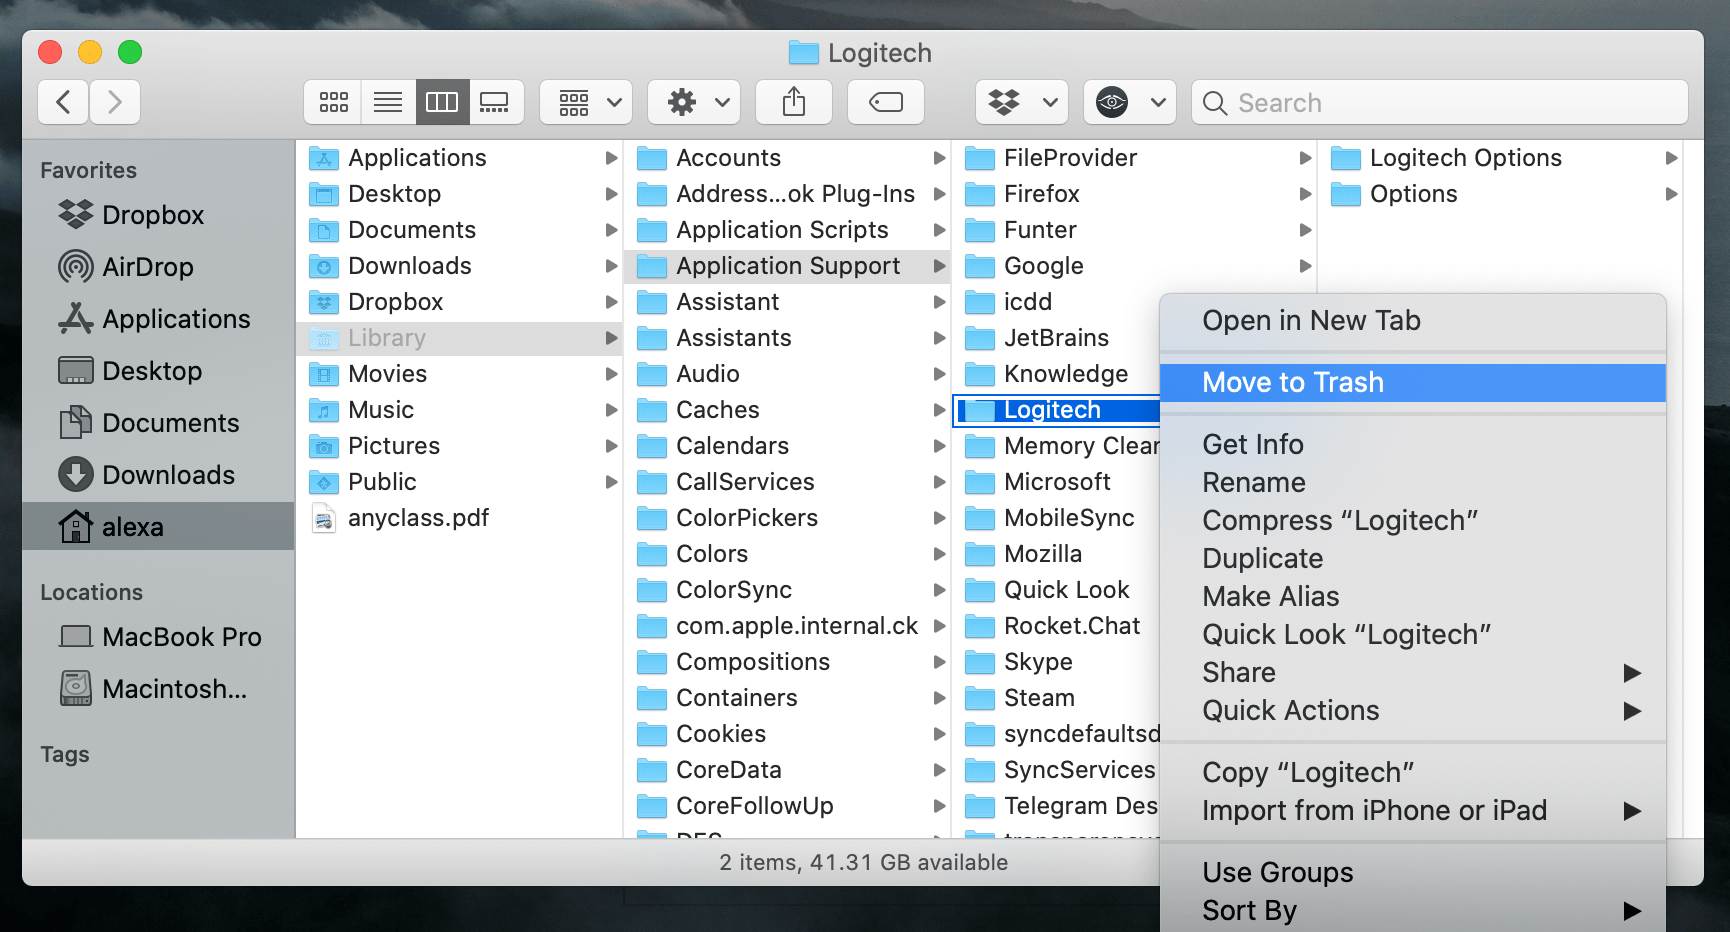 Moving Logitech Application Support folder to Trash in Finder